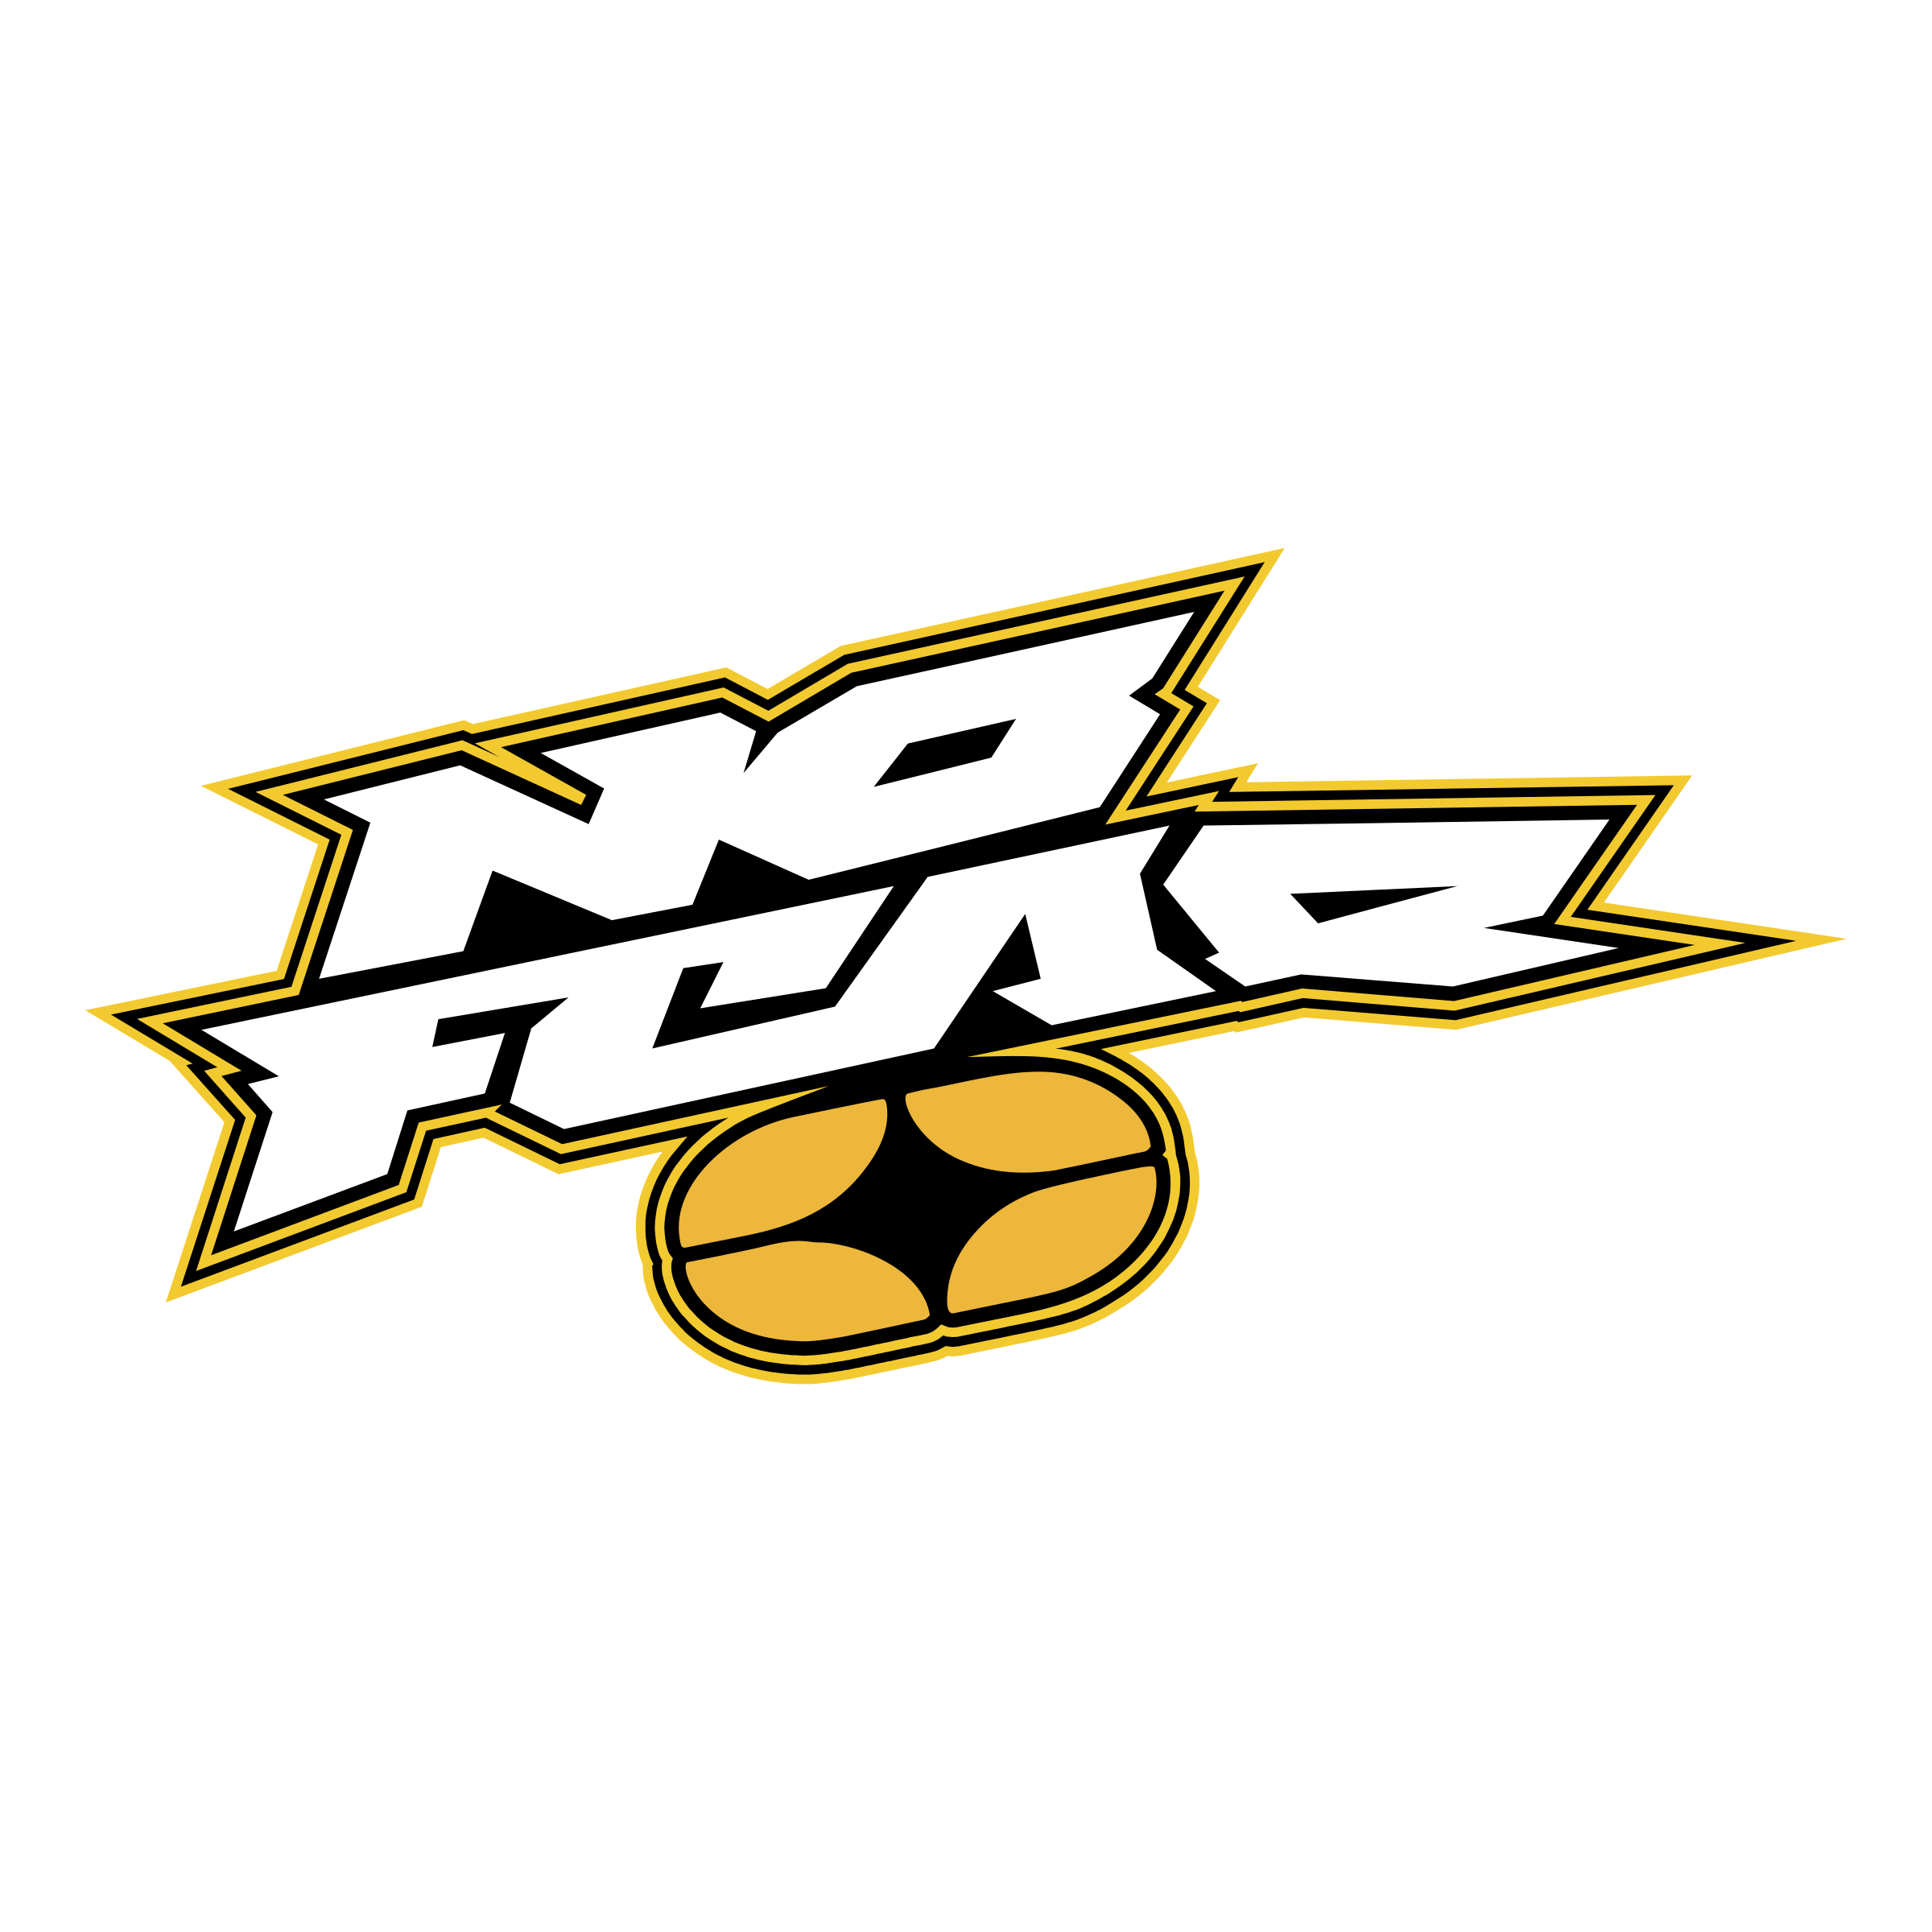 The No Fear Logo - No Fear Logo PNG Transparent & SVG Vector